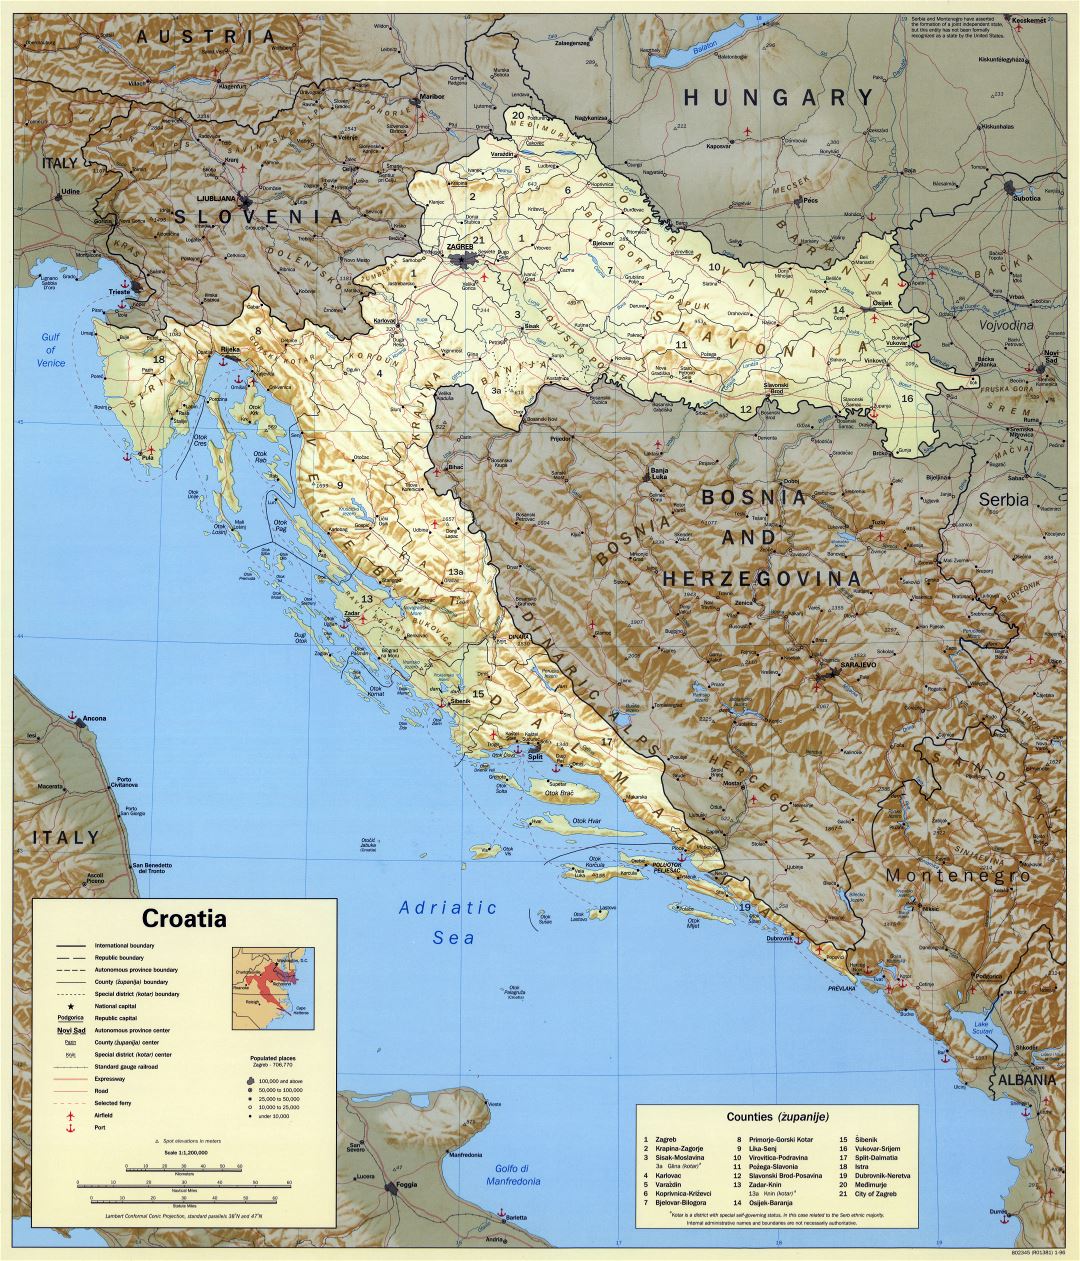 Ampliación de la escala del mapa político y administrativo de Croacia con relieve, marcas de ciudades, carreteras, ferrocarriles, aeropuertos y puertos marítimos - 1996